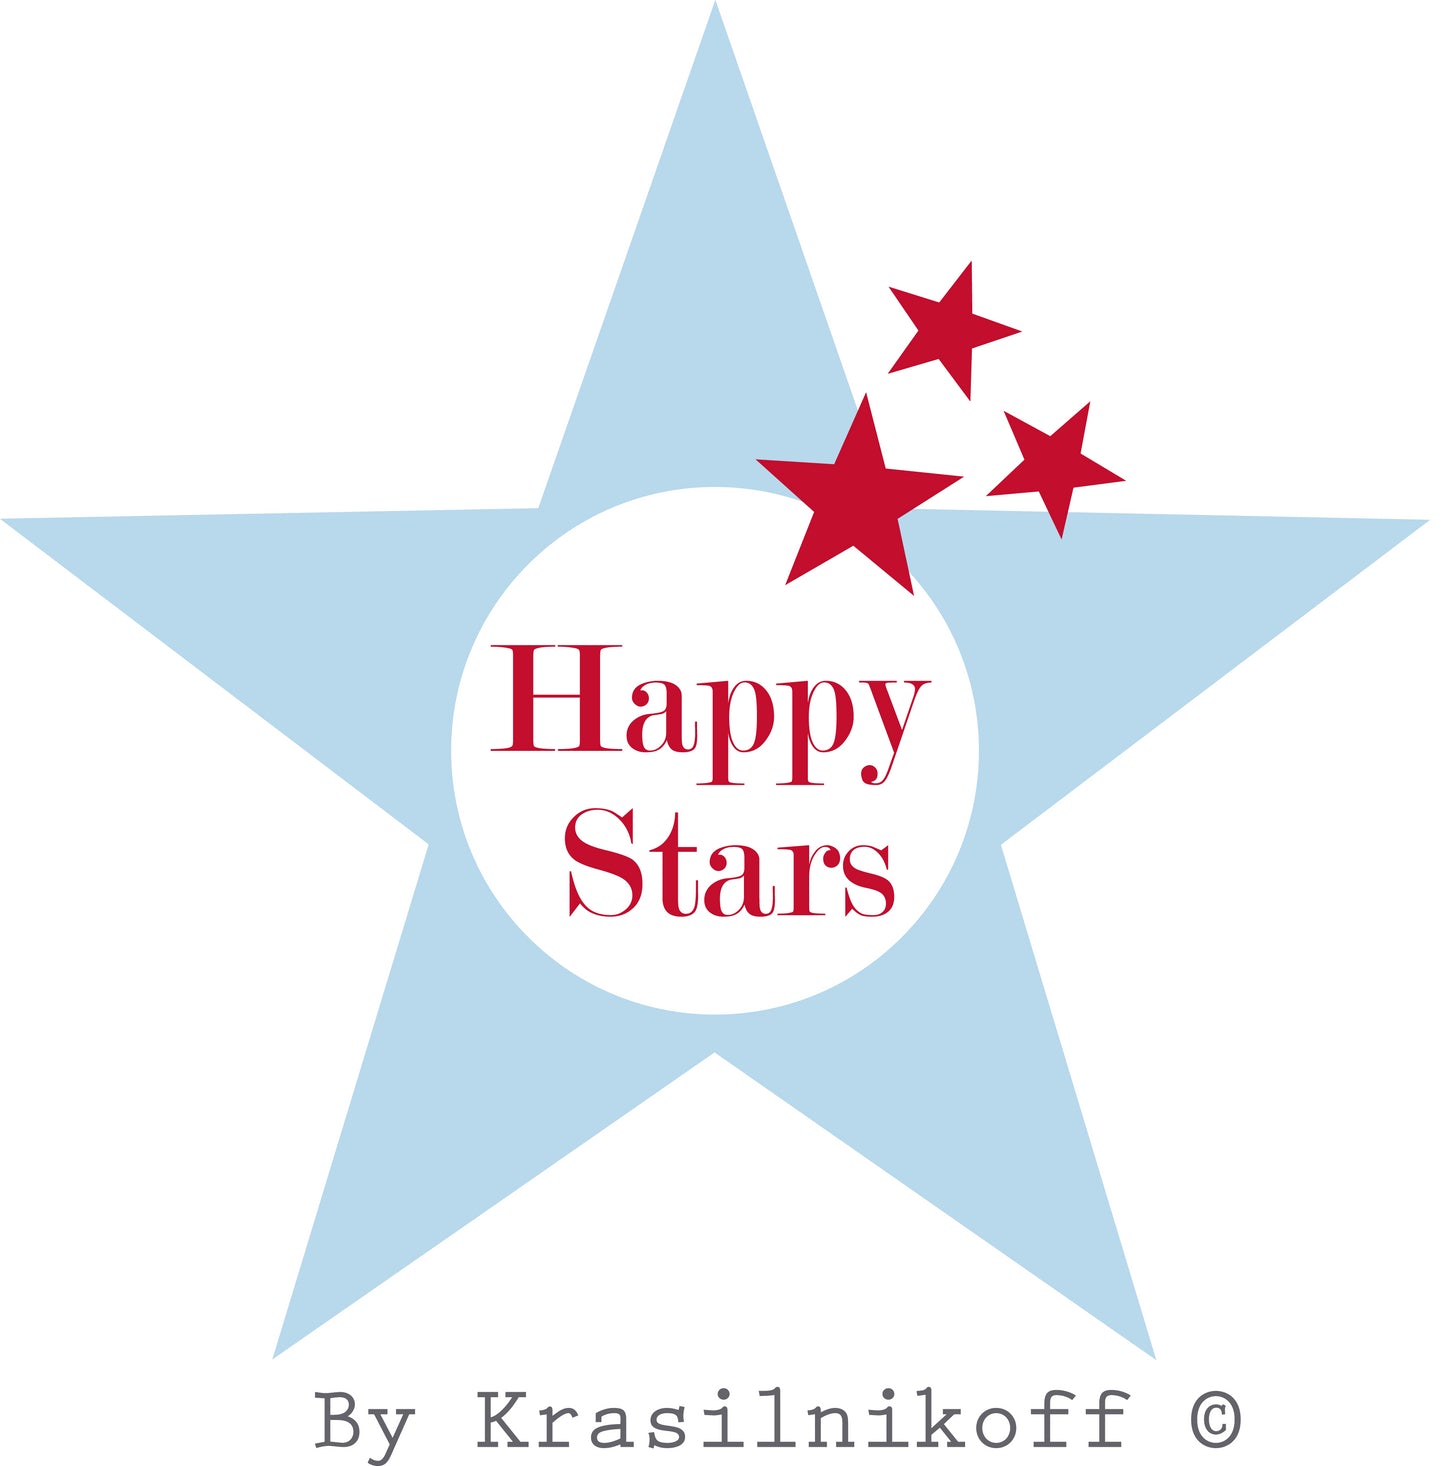 Schüssel "Micro Happy Bowl Red With Dots" von Krasilnikoff